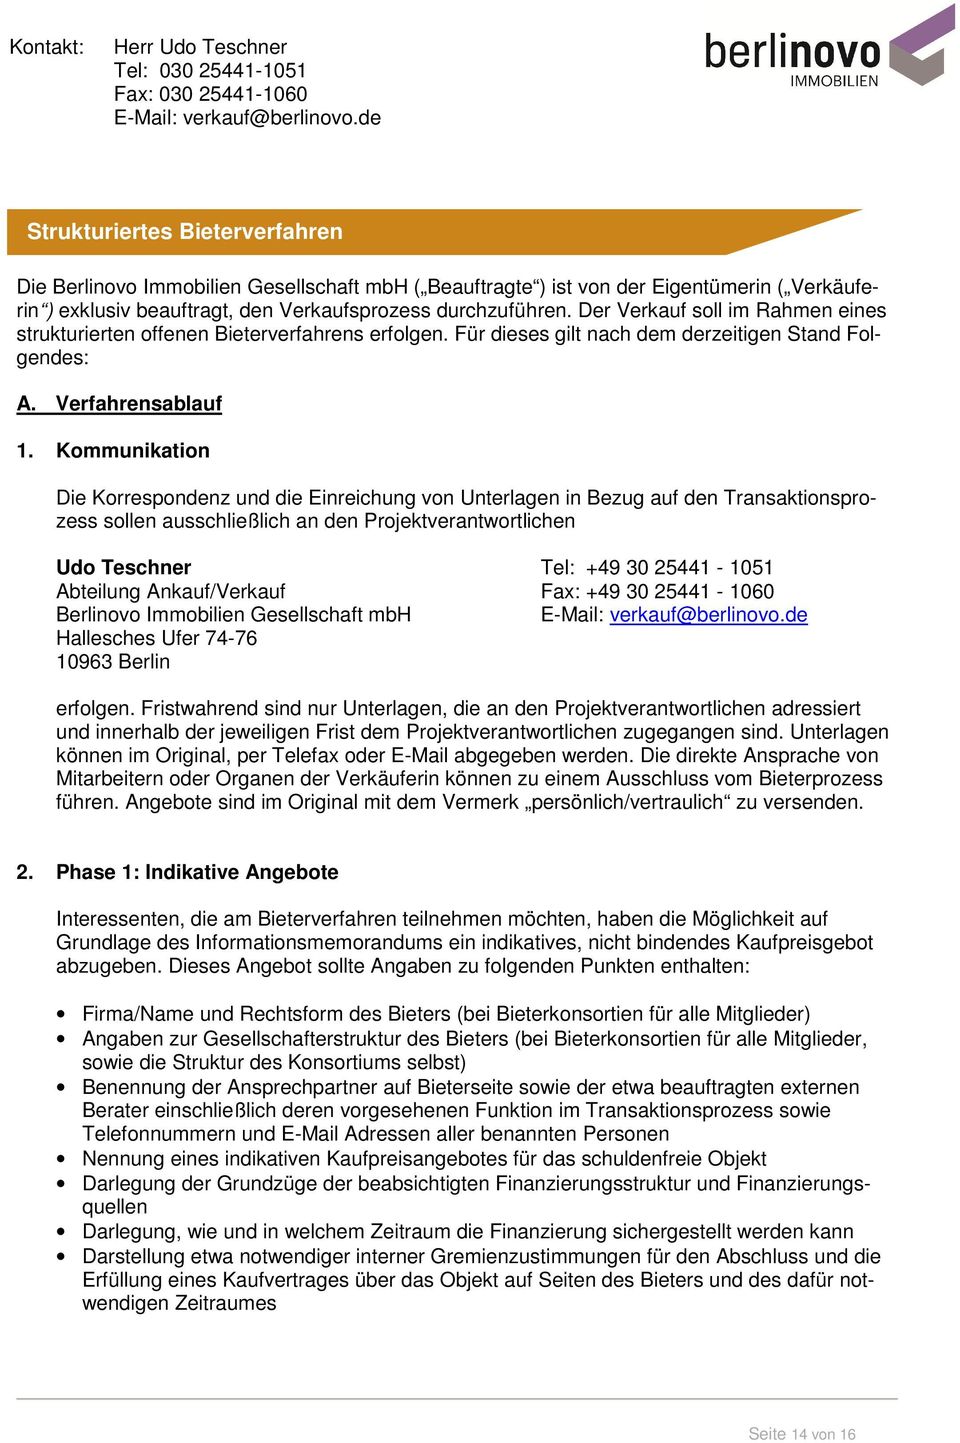 Kommunikation Die Korrespondenz und die Einreichung von Unterlagen in Bezug auf den Transaktionsprozess sollen ausschließlich an den Projektverantwortlichen Udo Teschner Tel: +49 30 25441-1051